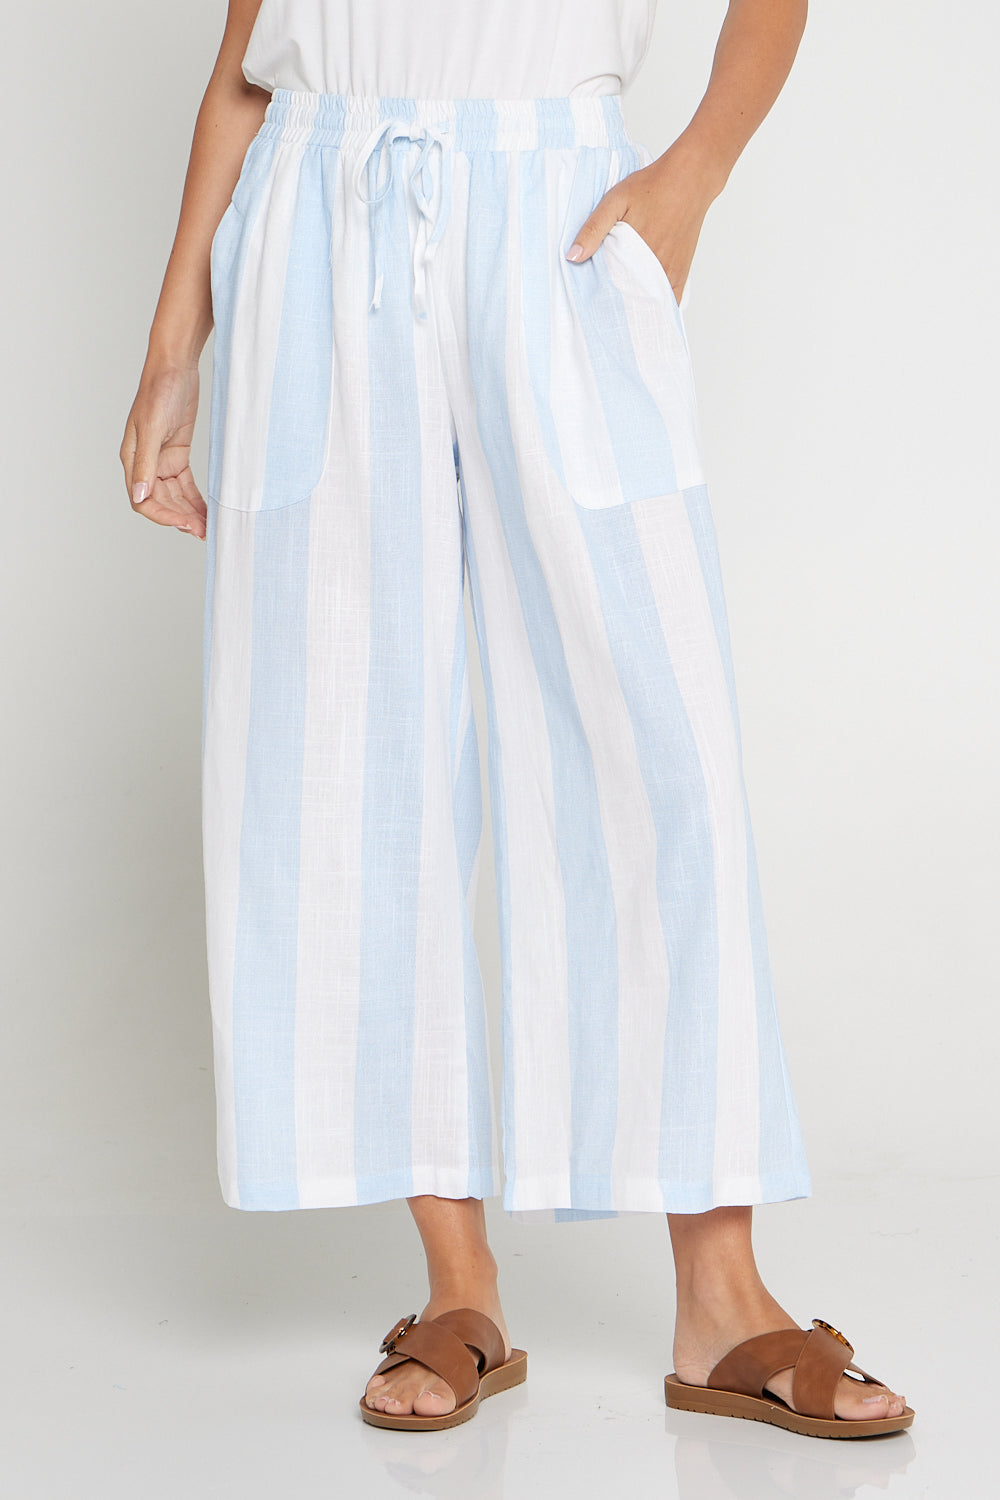 Aiko Linen Pants - Sky Blue/White Stripe